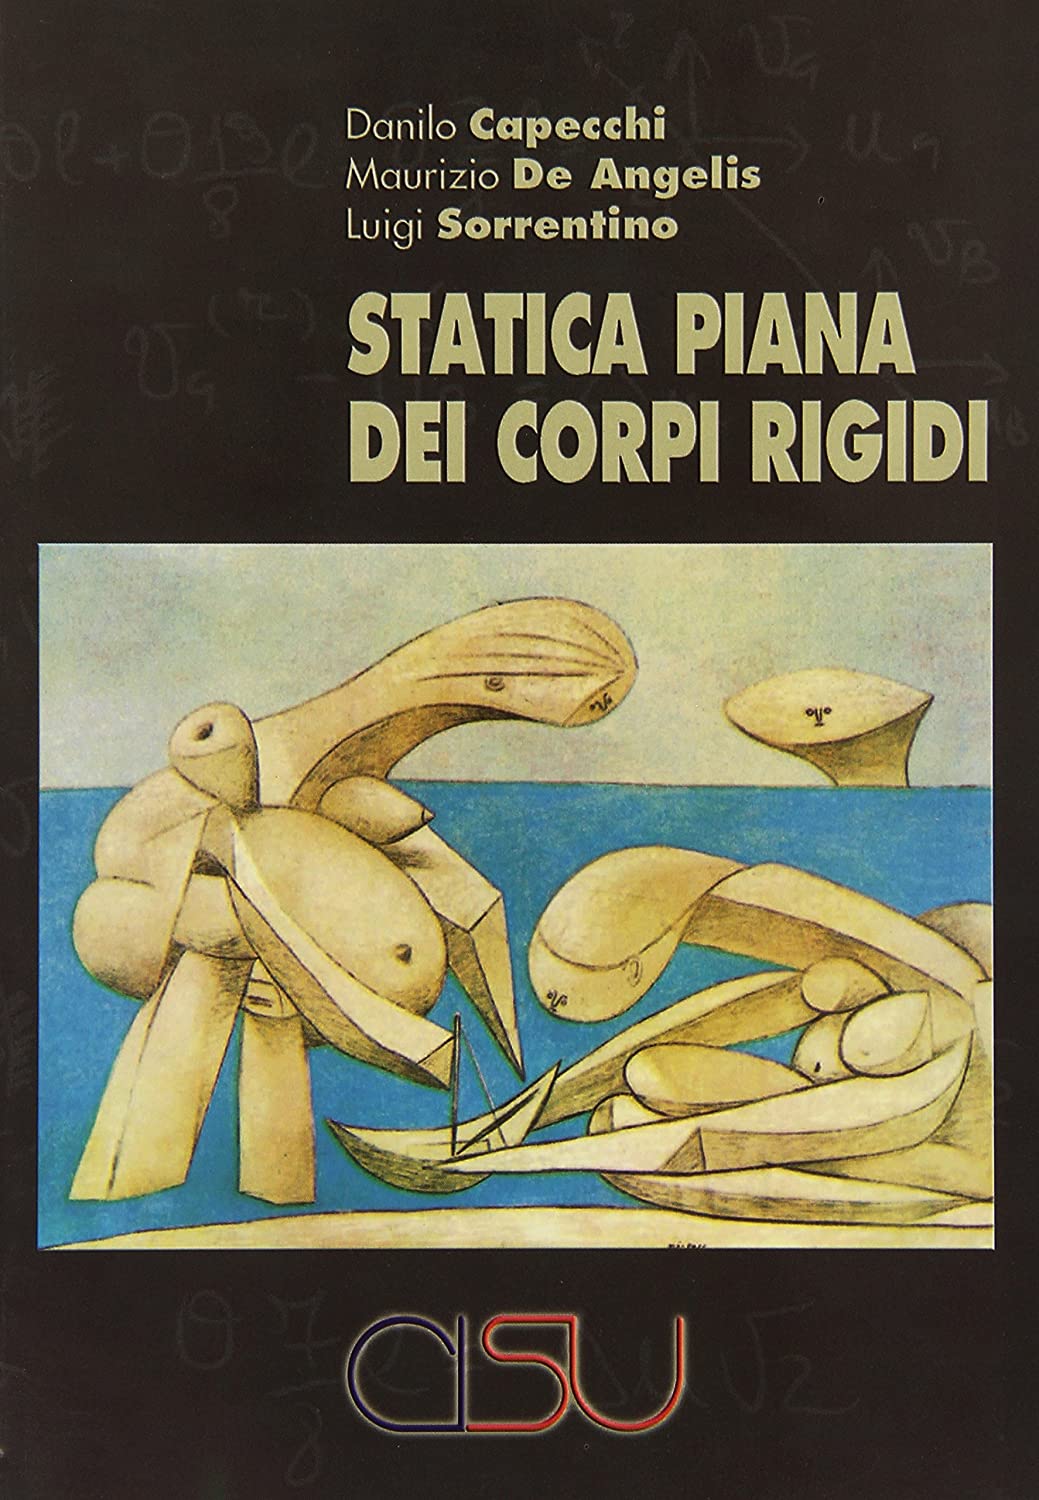 Libri Danilo Capecchi / Maurizio De Angelis / Sorrentino Luigi - Statica Piana Dei Corpi Rigidi NUOVO SIGILLATO SUBITO DISPONIBILE